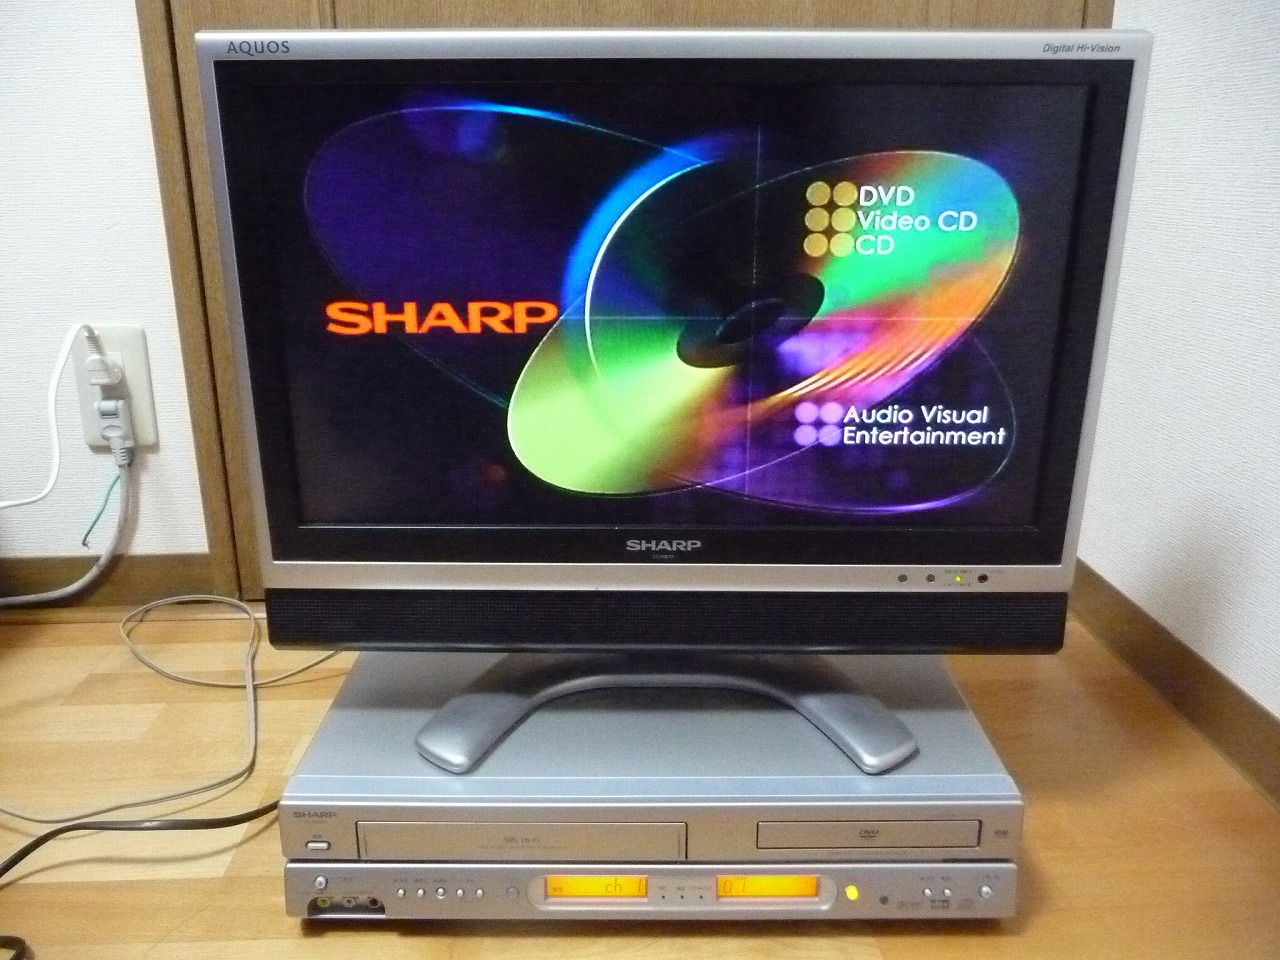 VHSビデオデッキ DVDプレーヤー SHARP DV-NC600 シャープ ダブルデッキ リモコン付き アナログ -  リサイクルショップ良品企画-買取実績